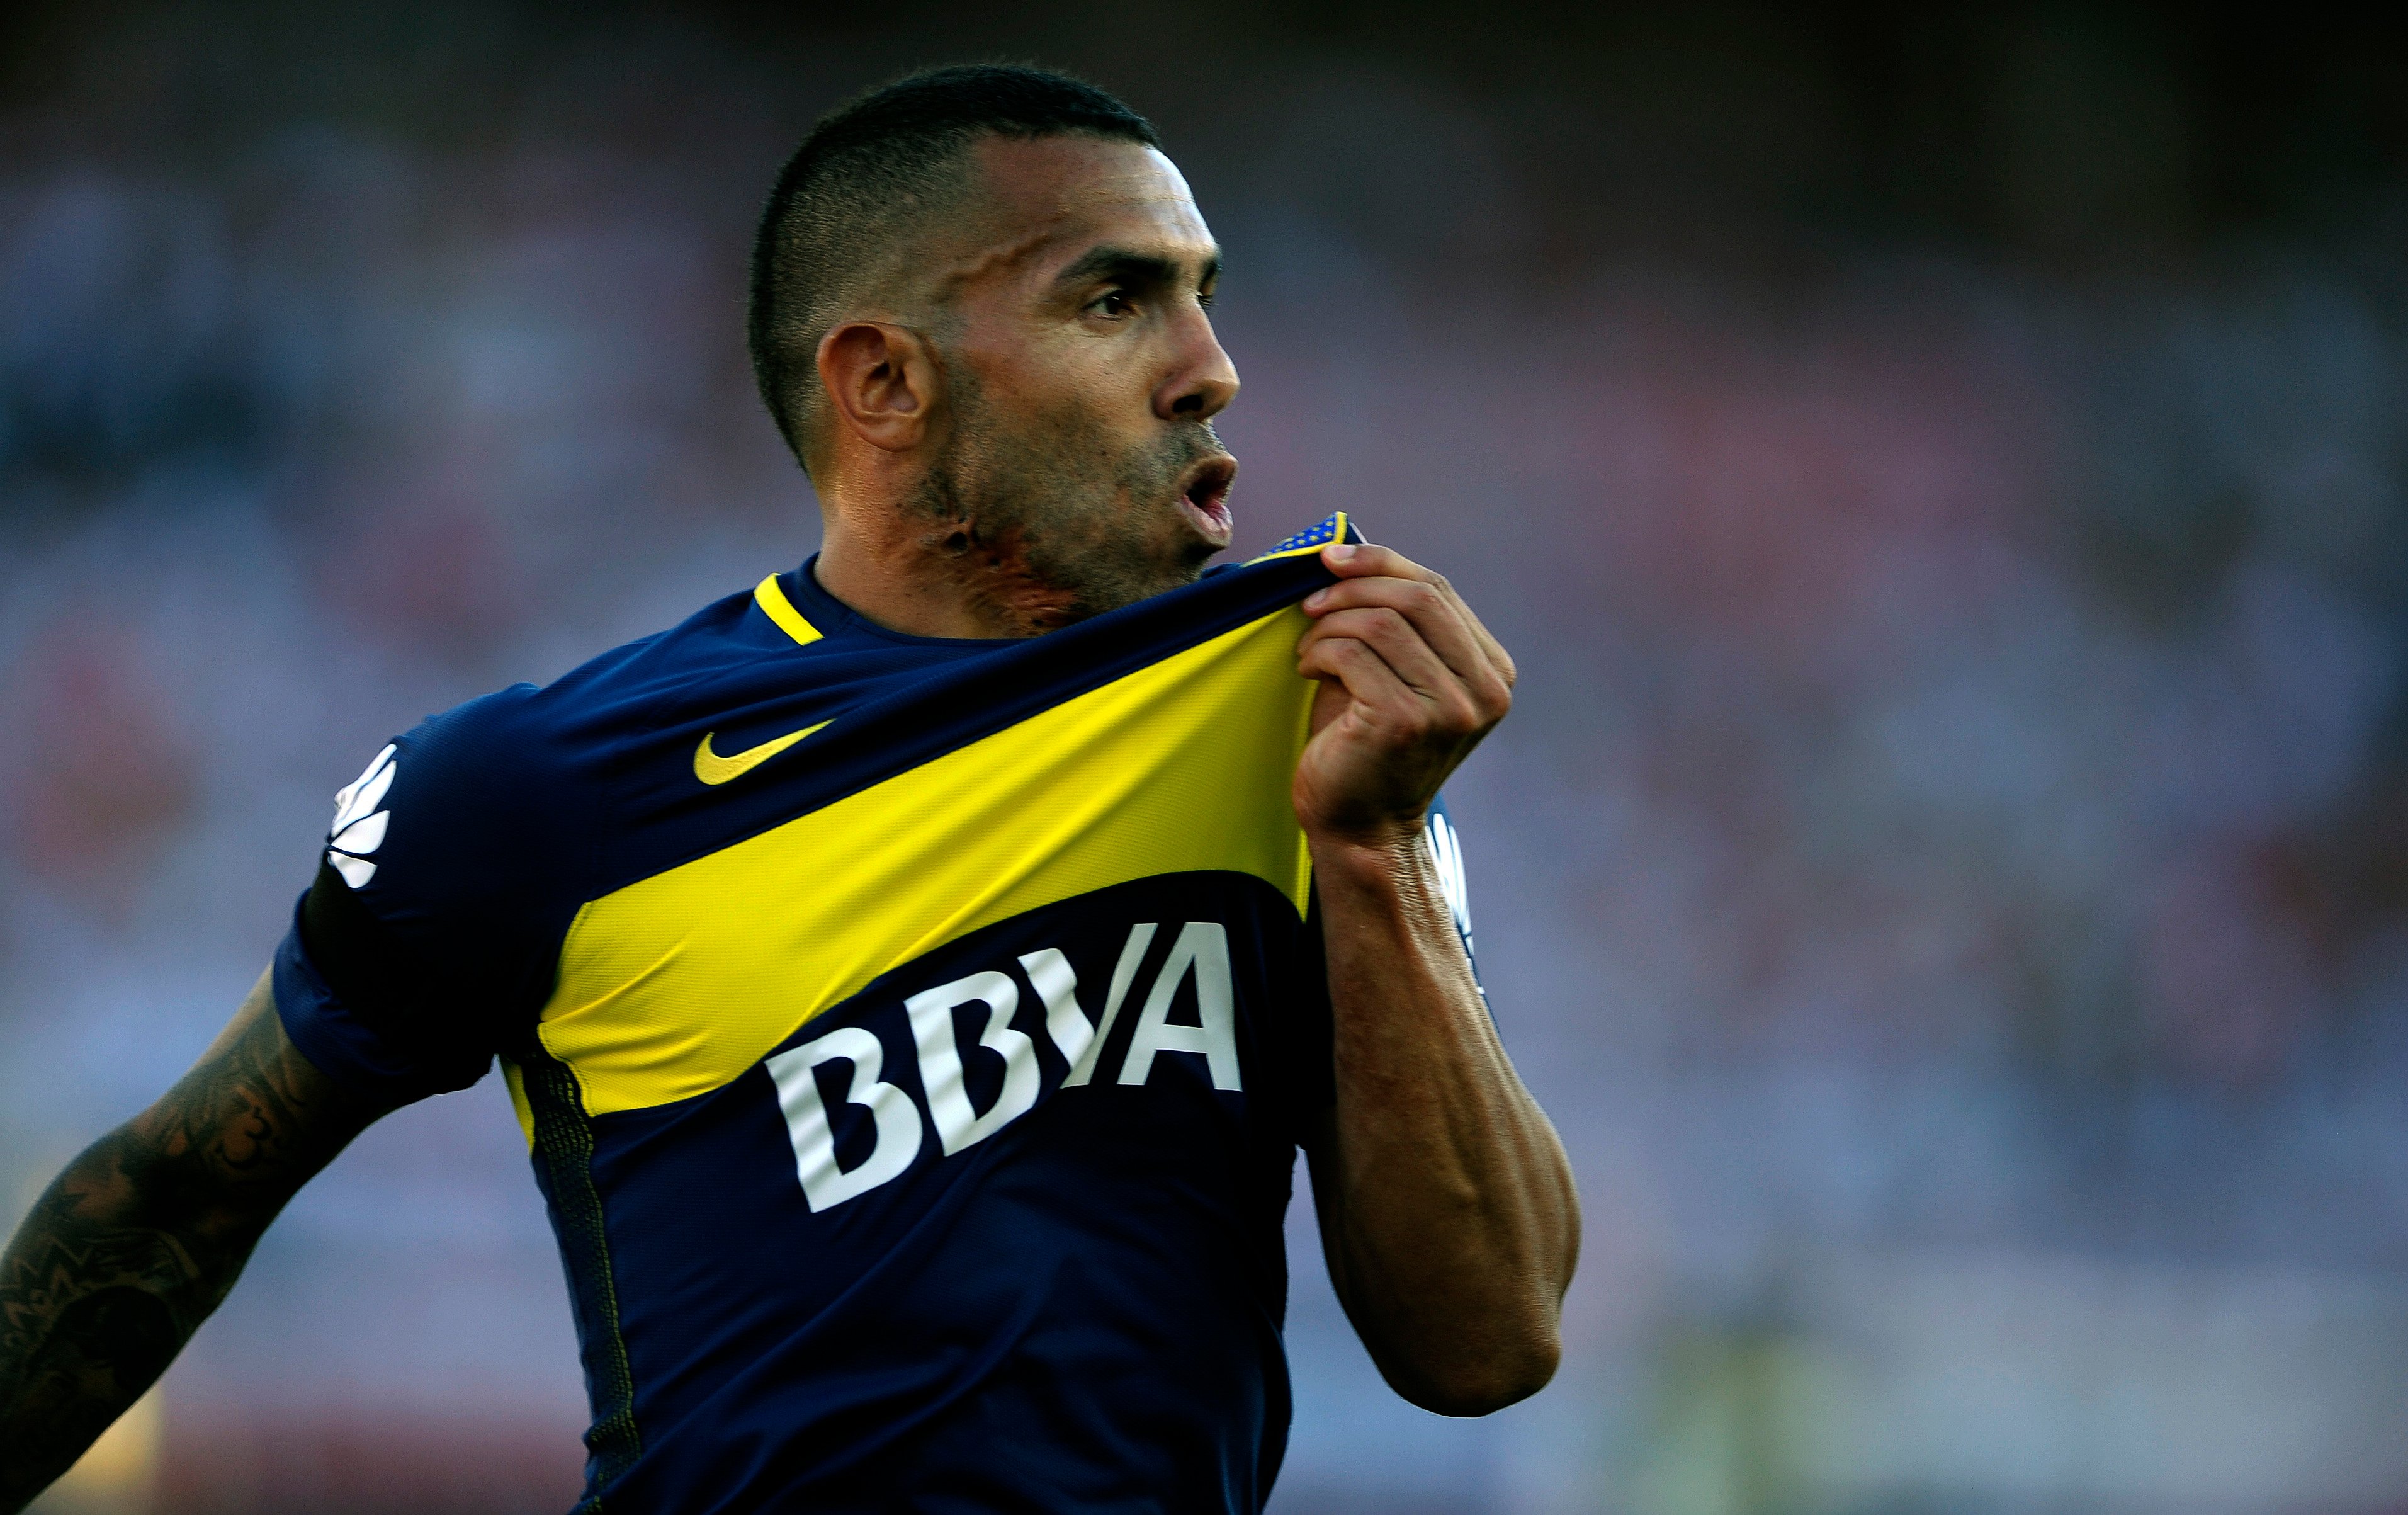 Carlos Tévez (37 anos) - Último clube: Boca Juniors - Sem contrato desde: 01/07/2021 - Valor: 1 milhão de euros